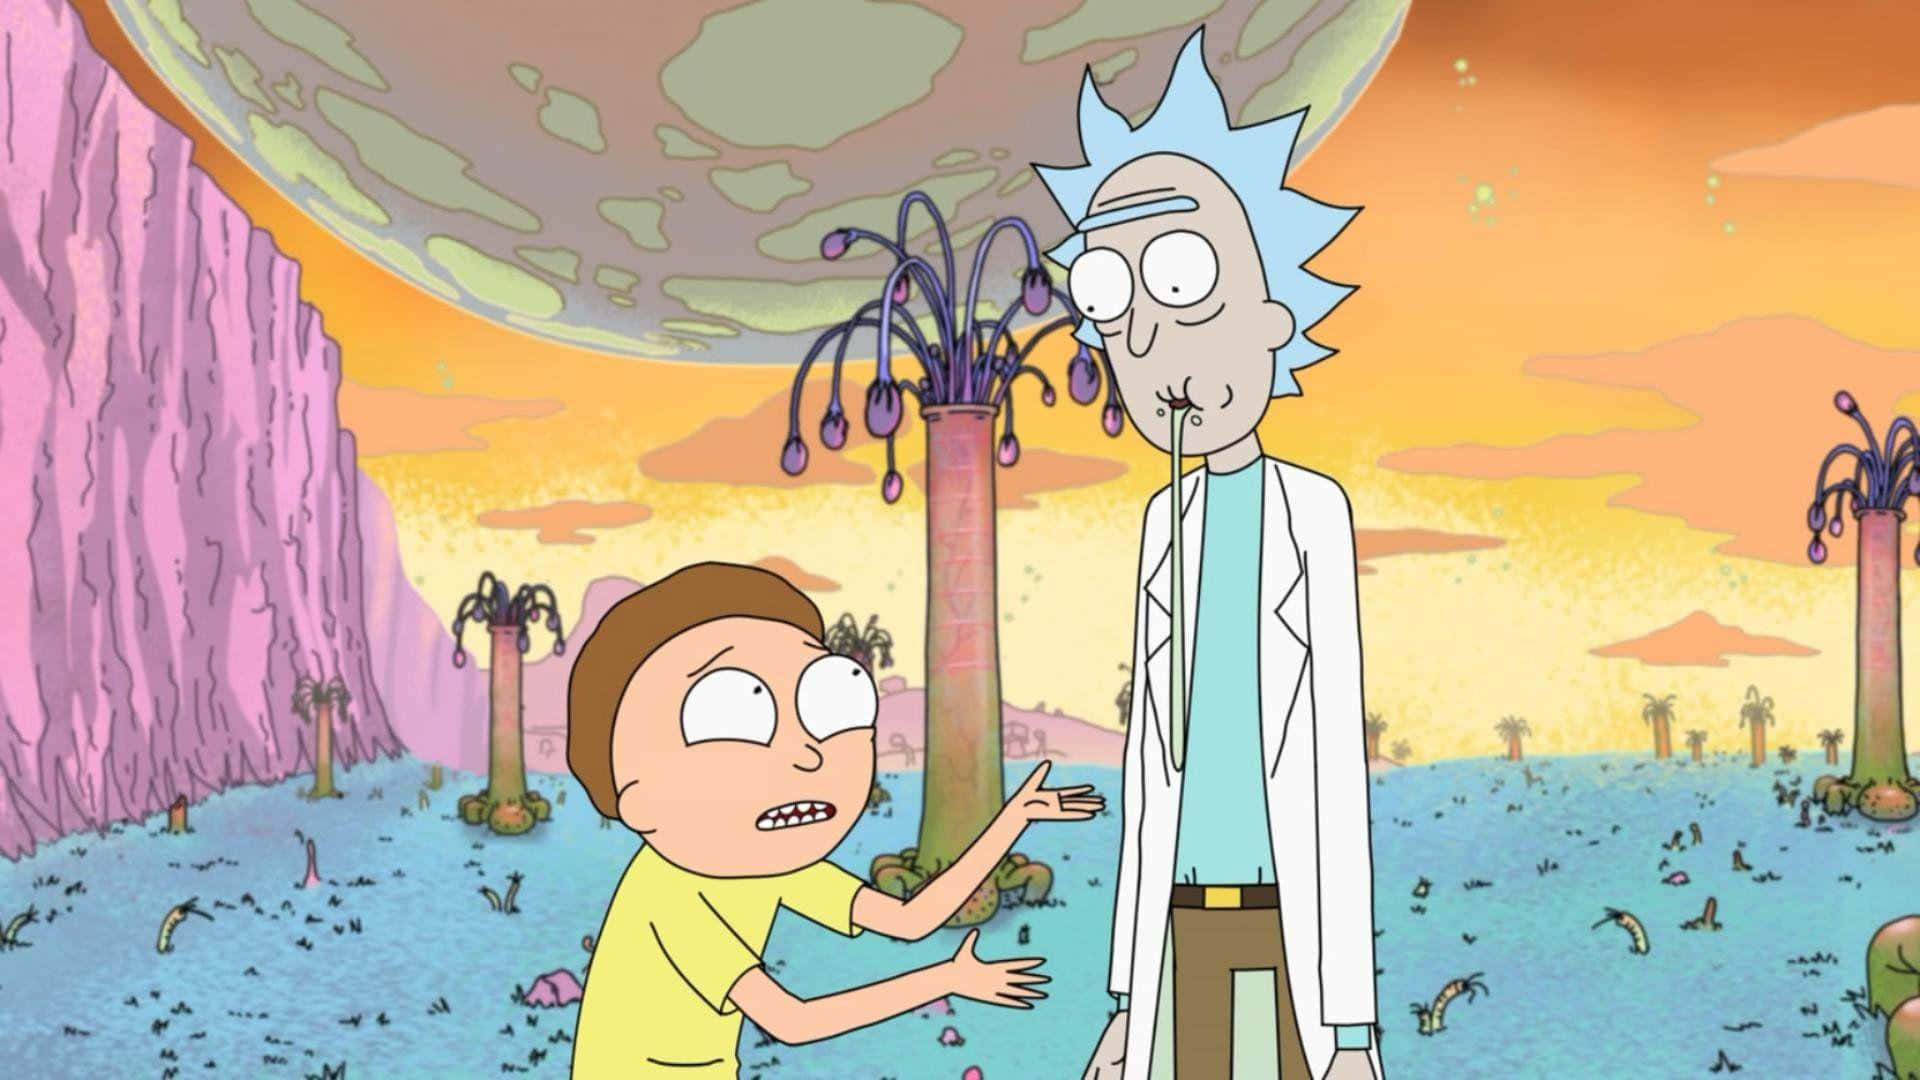 Lad eventyret begynde med Rick og Morty! Wallpaper